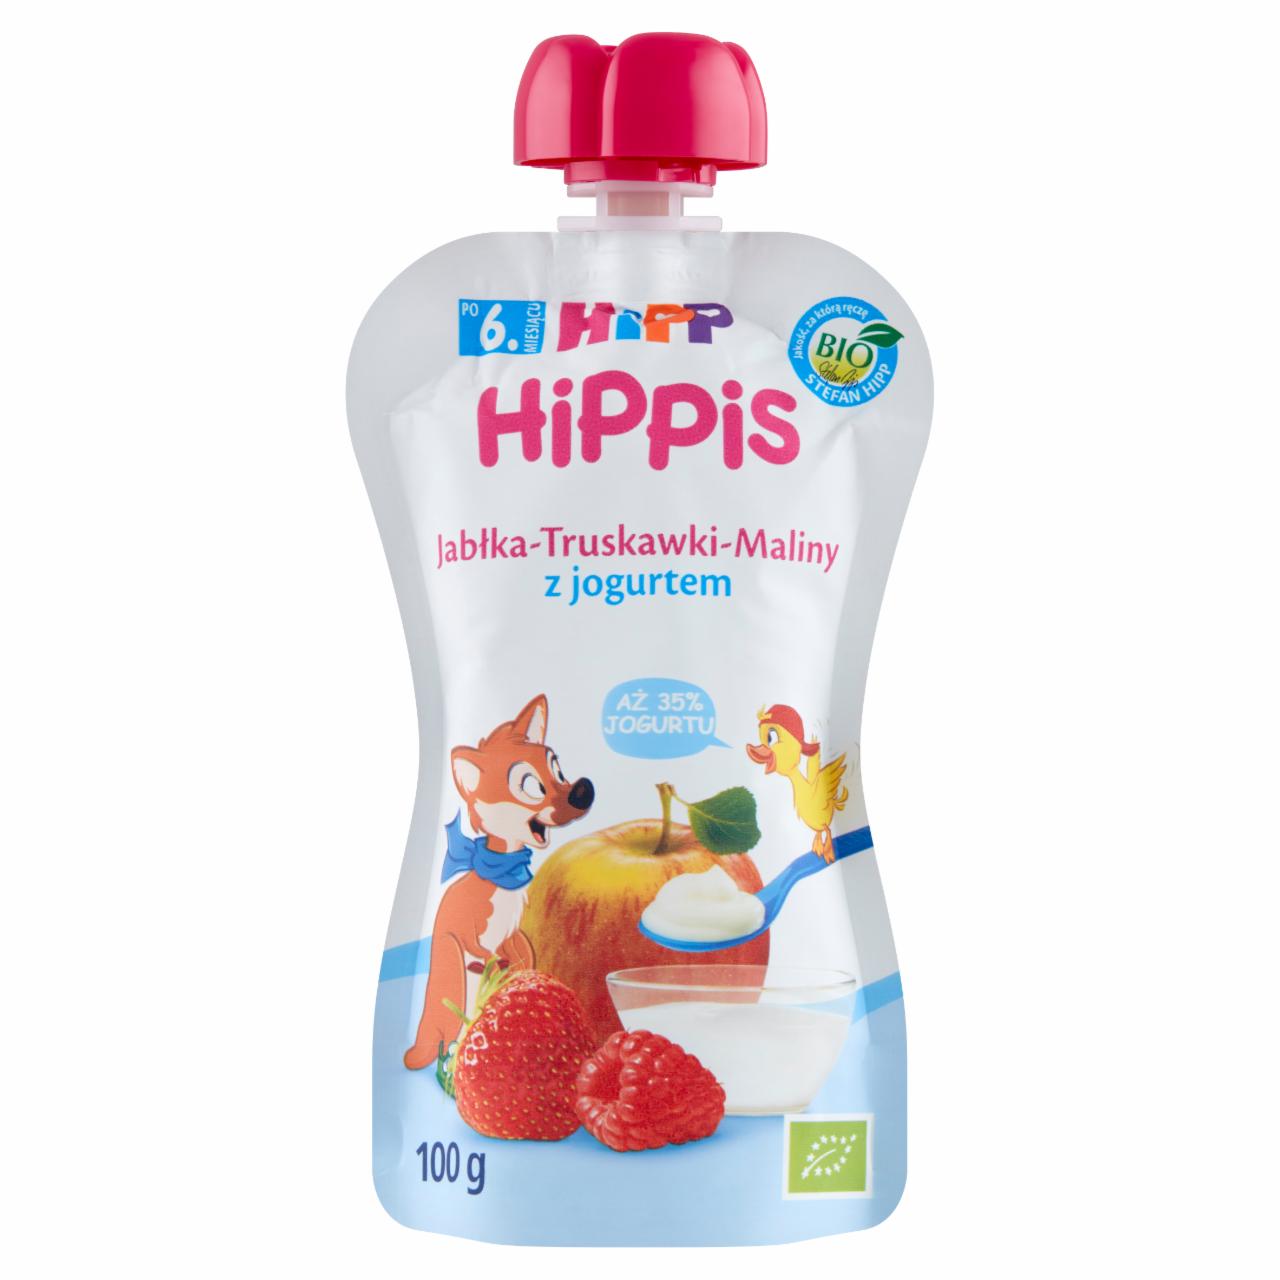 Zdjęcia - HiPP BIO HiPPiS Mus owocowy po 6. miesiącu jabłka-truskawki-maliny z jogurtem 100 g